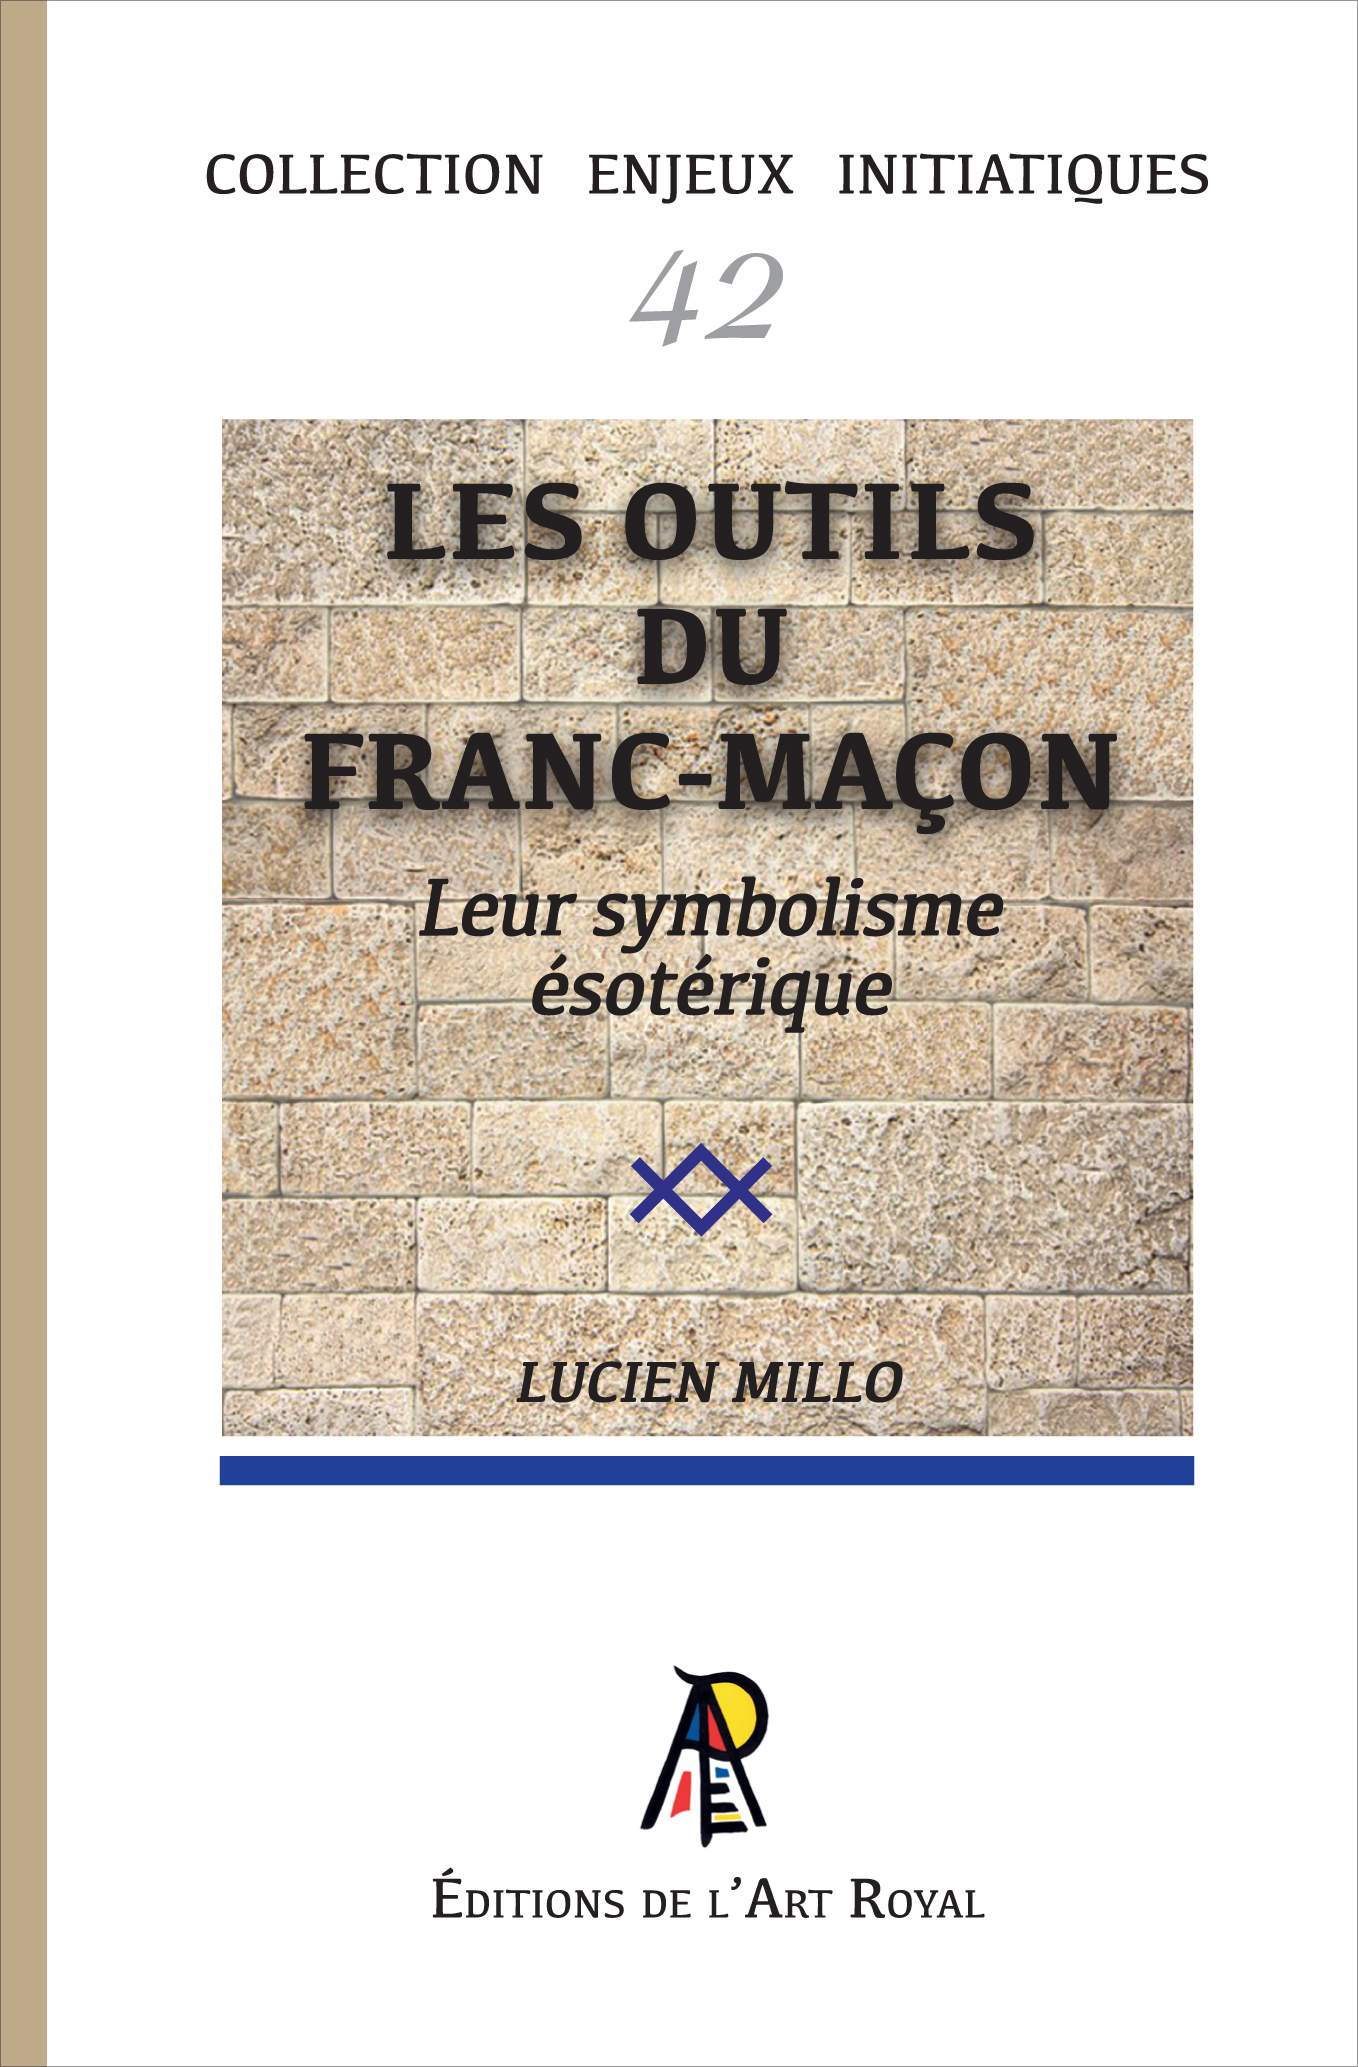 42 - Les outils symboliques du franc-maçon, Lucien Millo